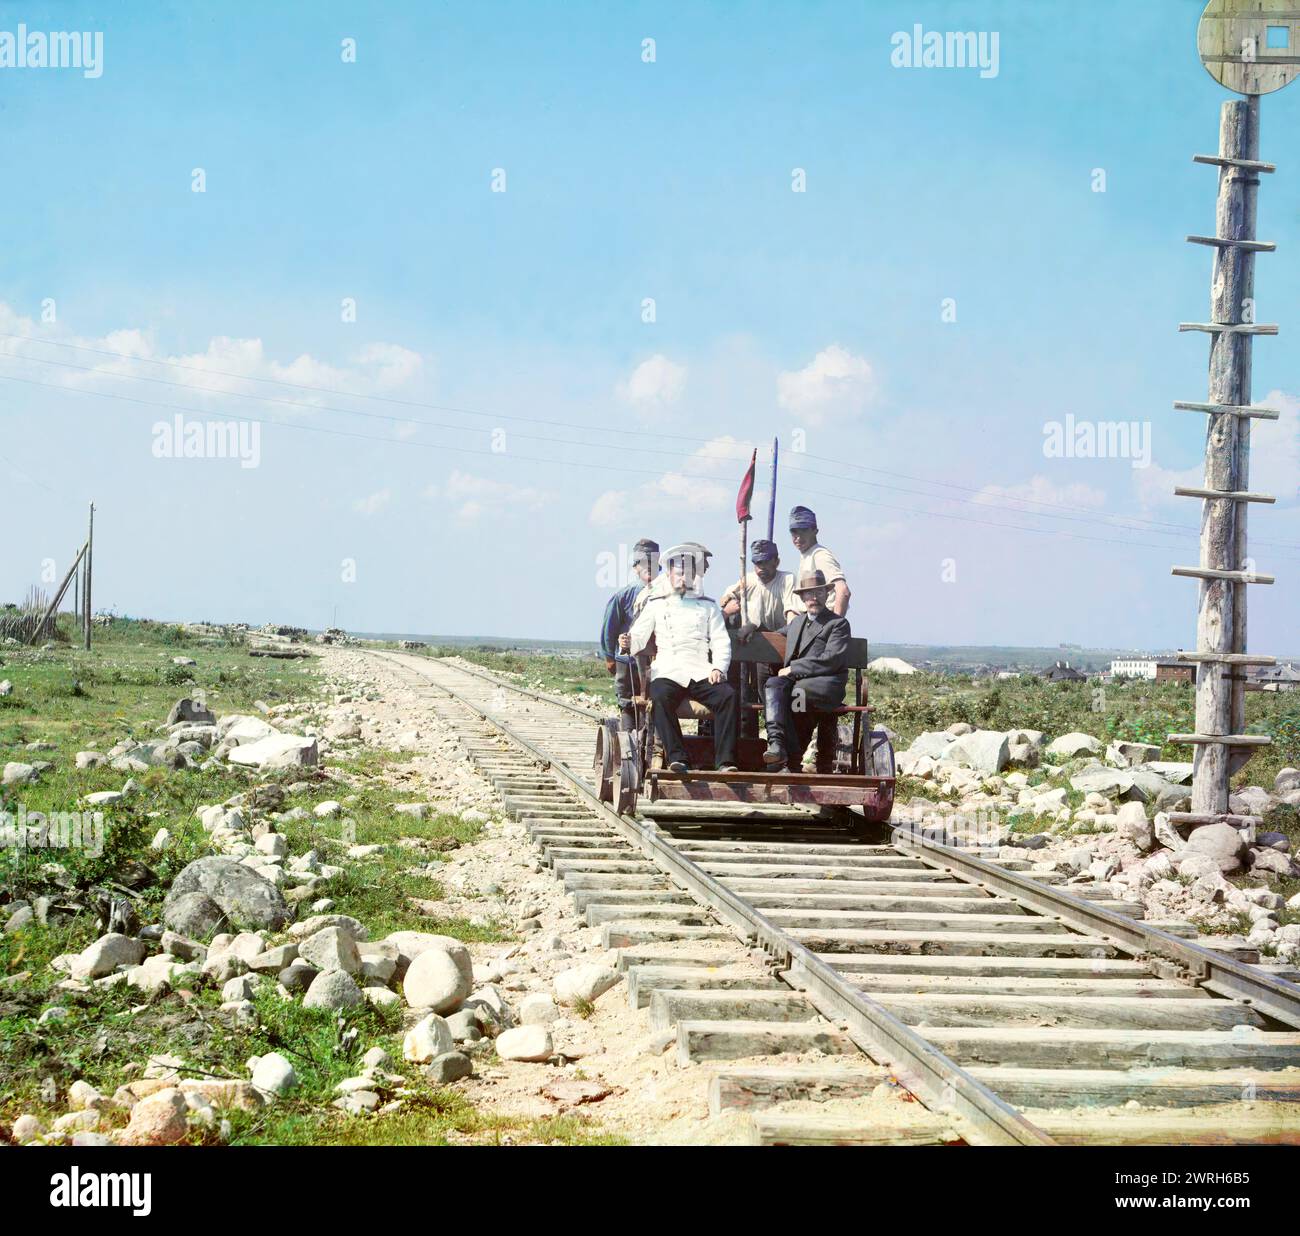 Sur le handcar à l'extérieur de Petrozavodsk sur le chemin de fer de Mourmansk, 1915. Prokudin-Gorskii et d'autres empruntent le chemin de fer de Mourmansk en voiture le long des rives du lac Onega près de Petrozavodsk. Dès le début de la construction des chemins de fer russes dans les années 1850, les rails ont été posés en utilisant une voie plus large (5 pieds 3,5 pouces) que la norme européenne. Banque D'Images